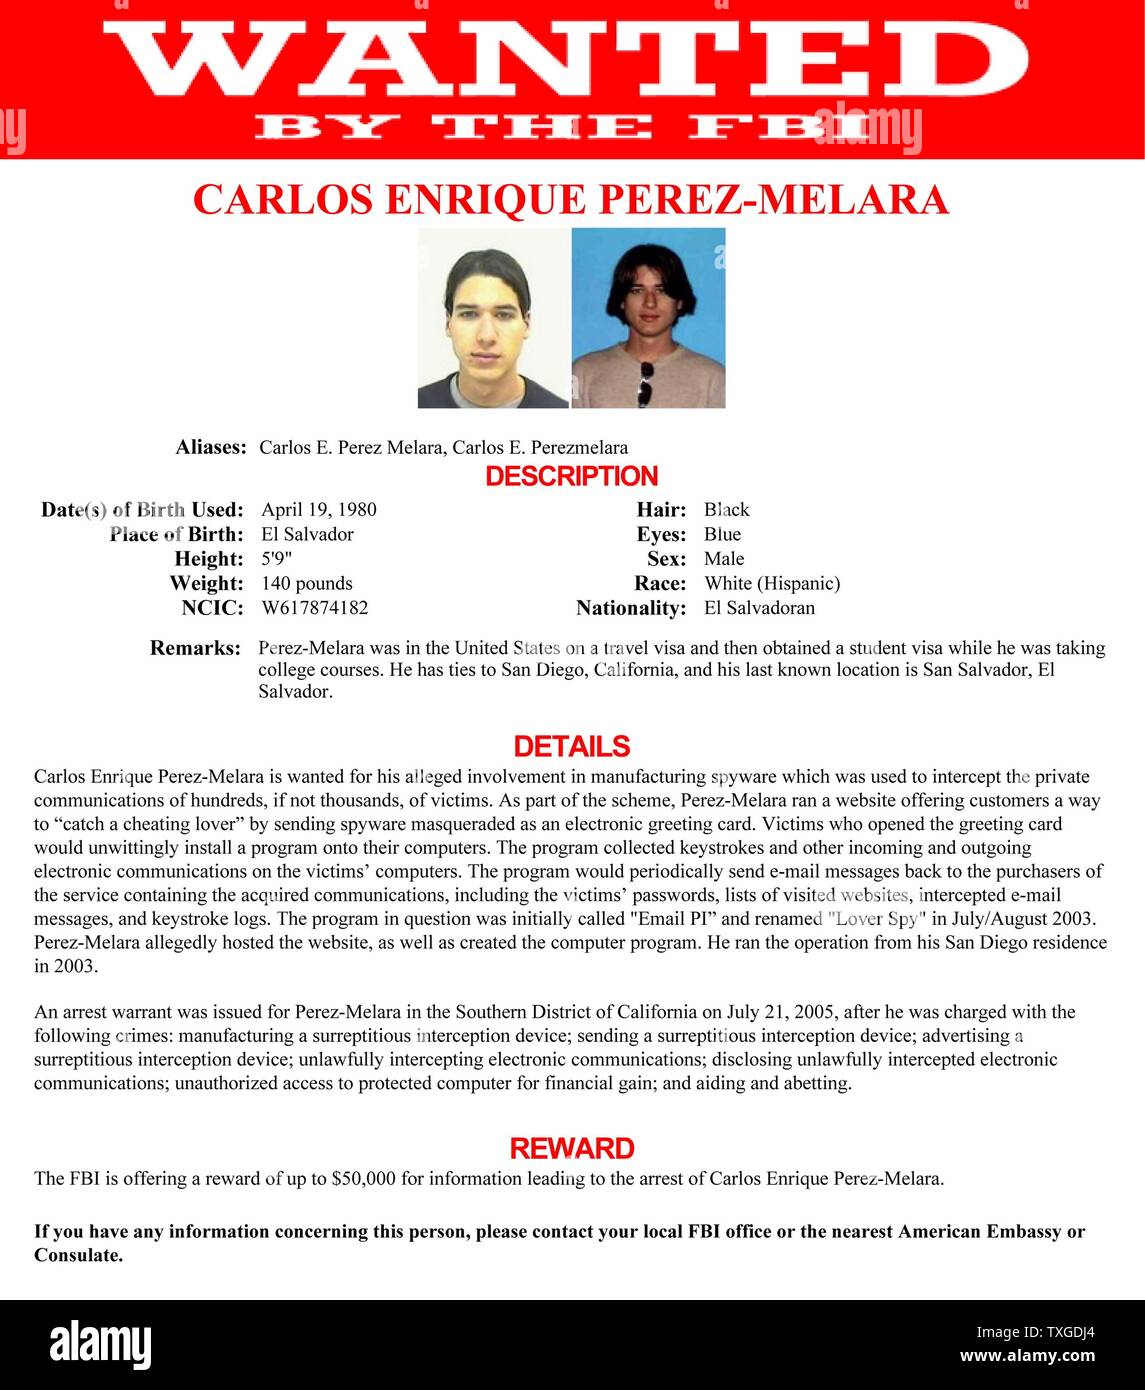 Avis de recherche émis par le FBI pour Carlos Enrique Perez-Melara (1980-) recherché pour son implication présumée dans la fabrication des logiciels espions. Datée 2013 Banque D'Images